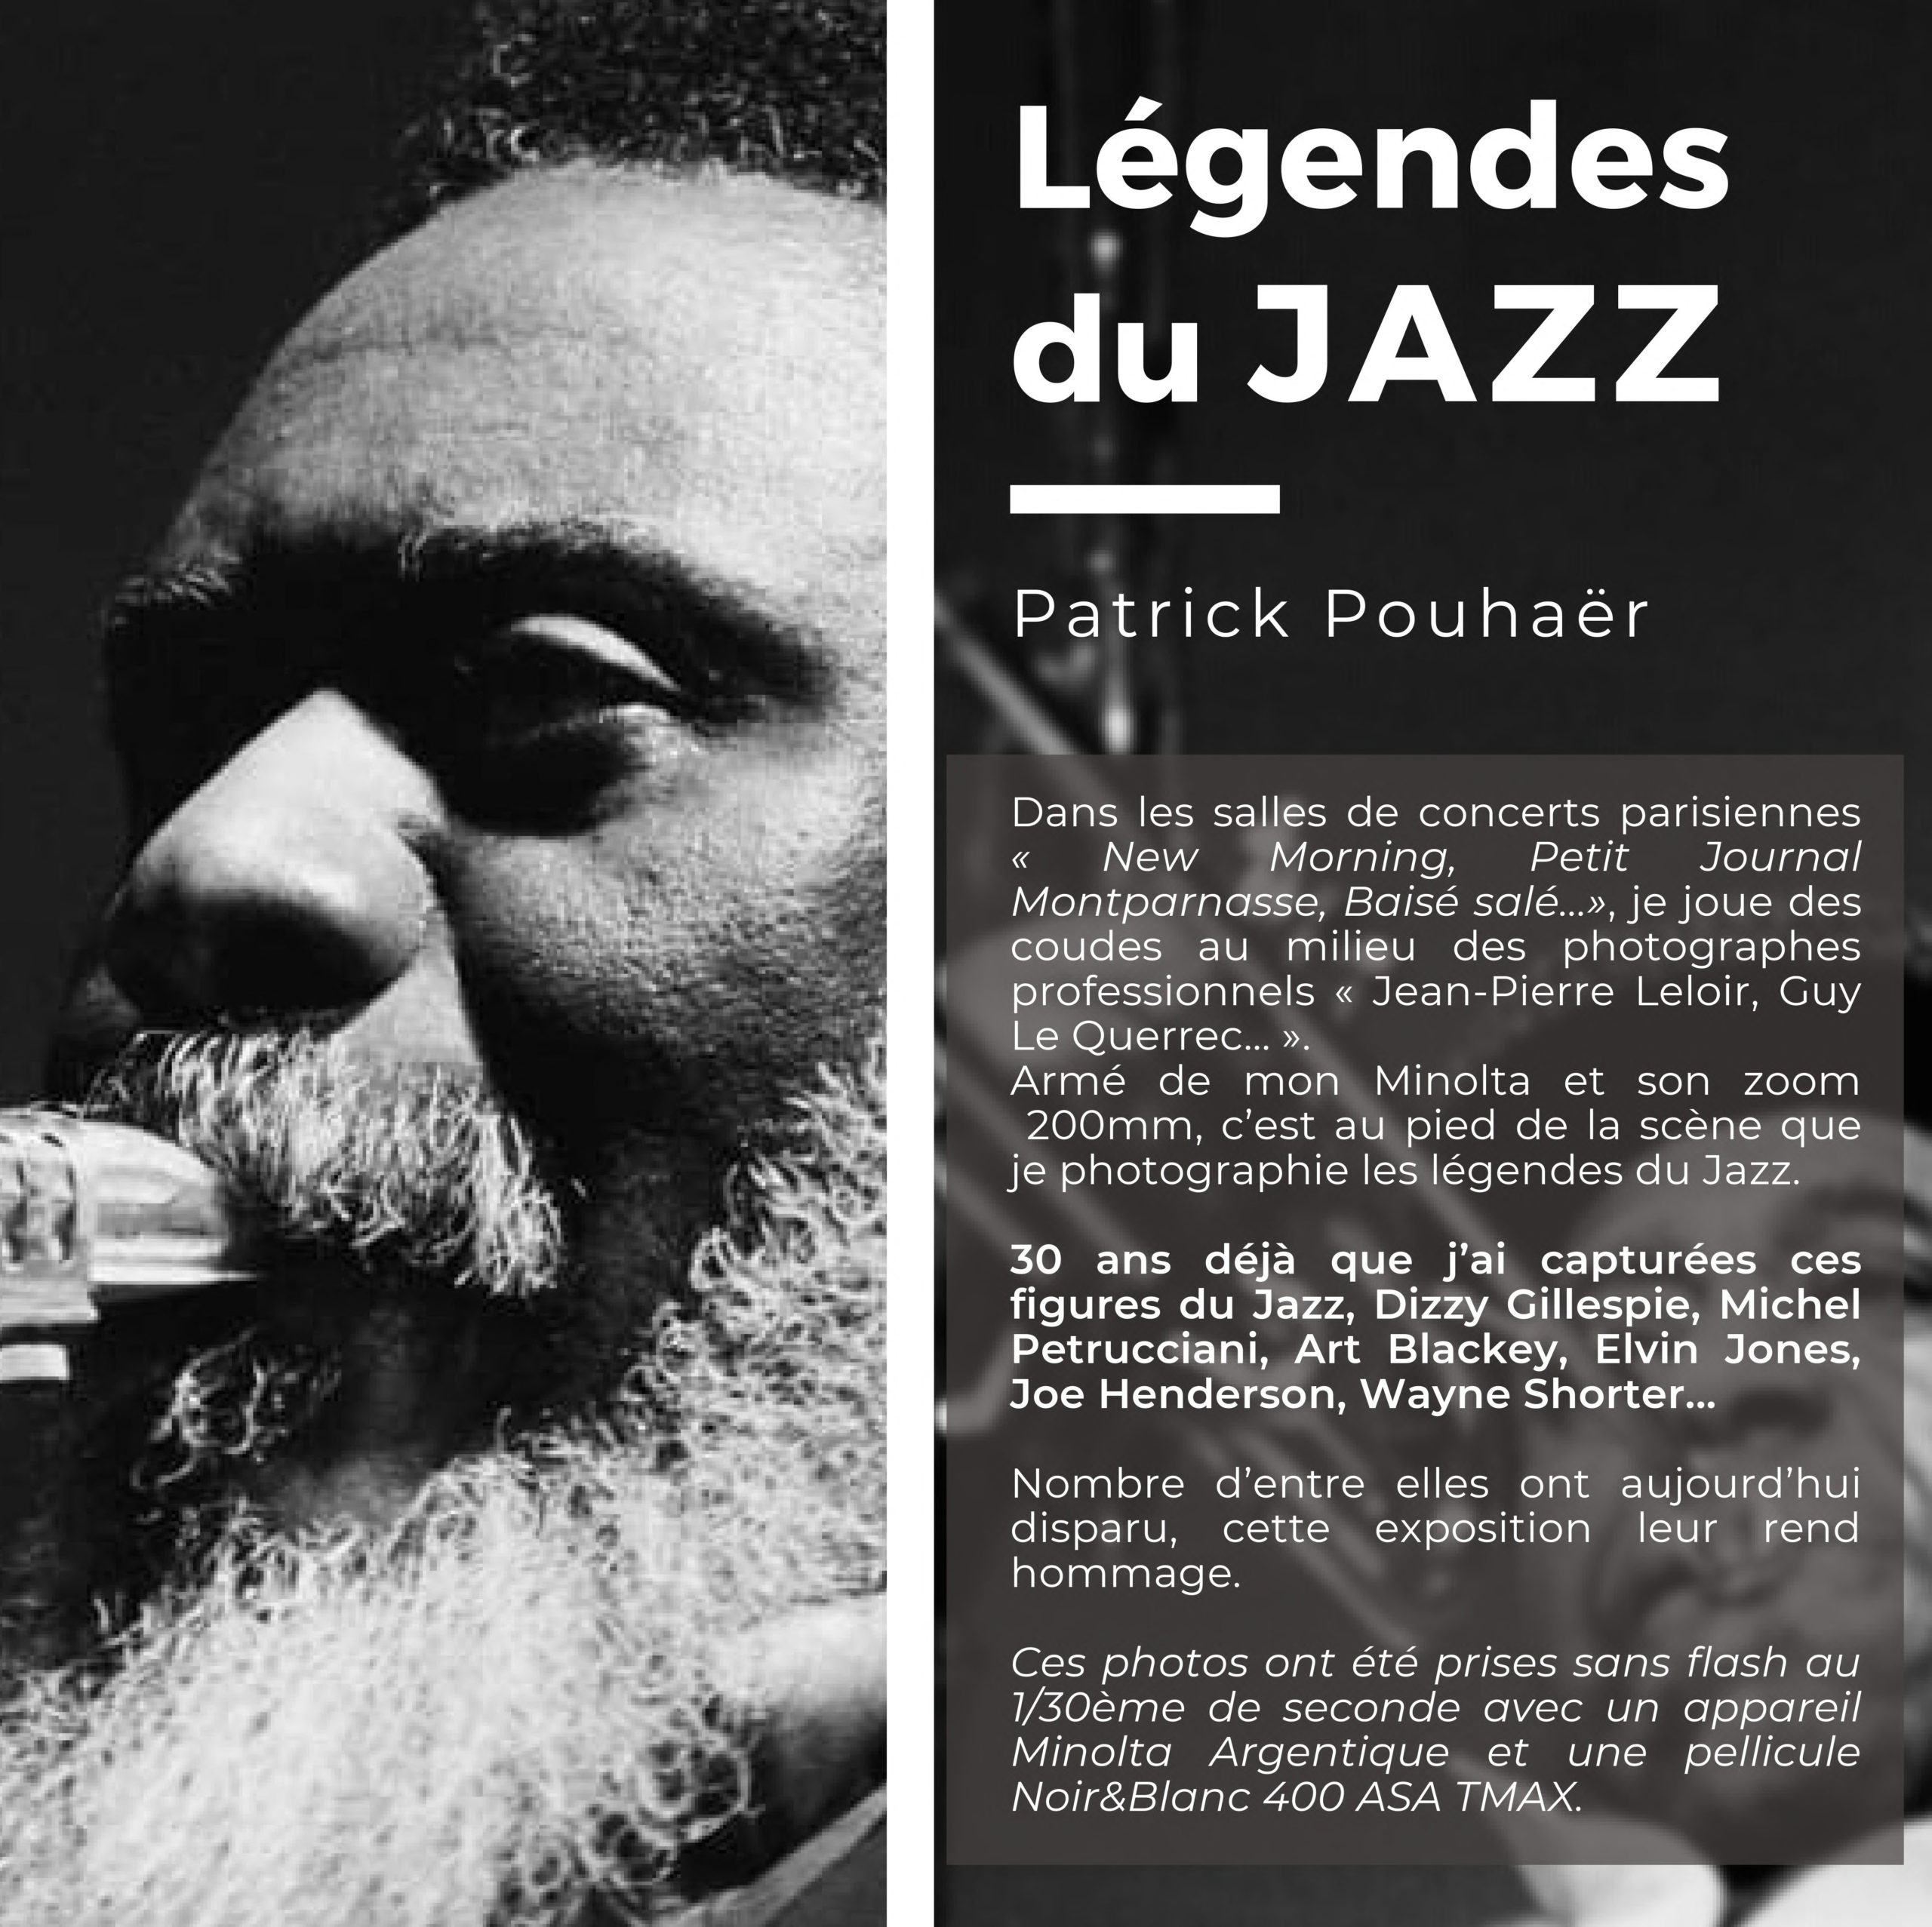 Exposition photos "Légendes du Jazz" - Patrick Pouhaer